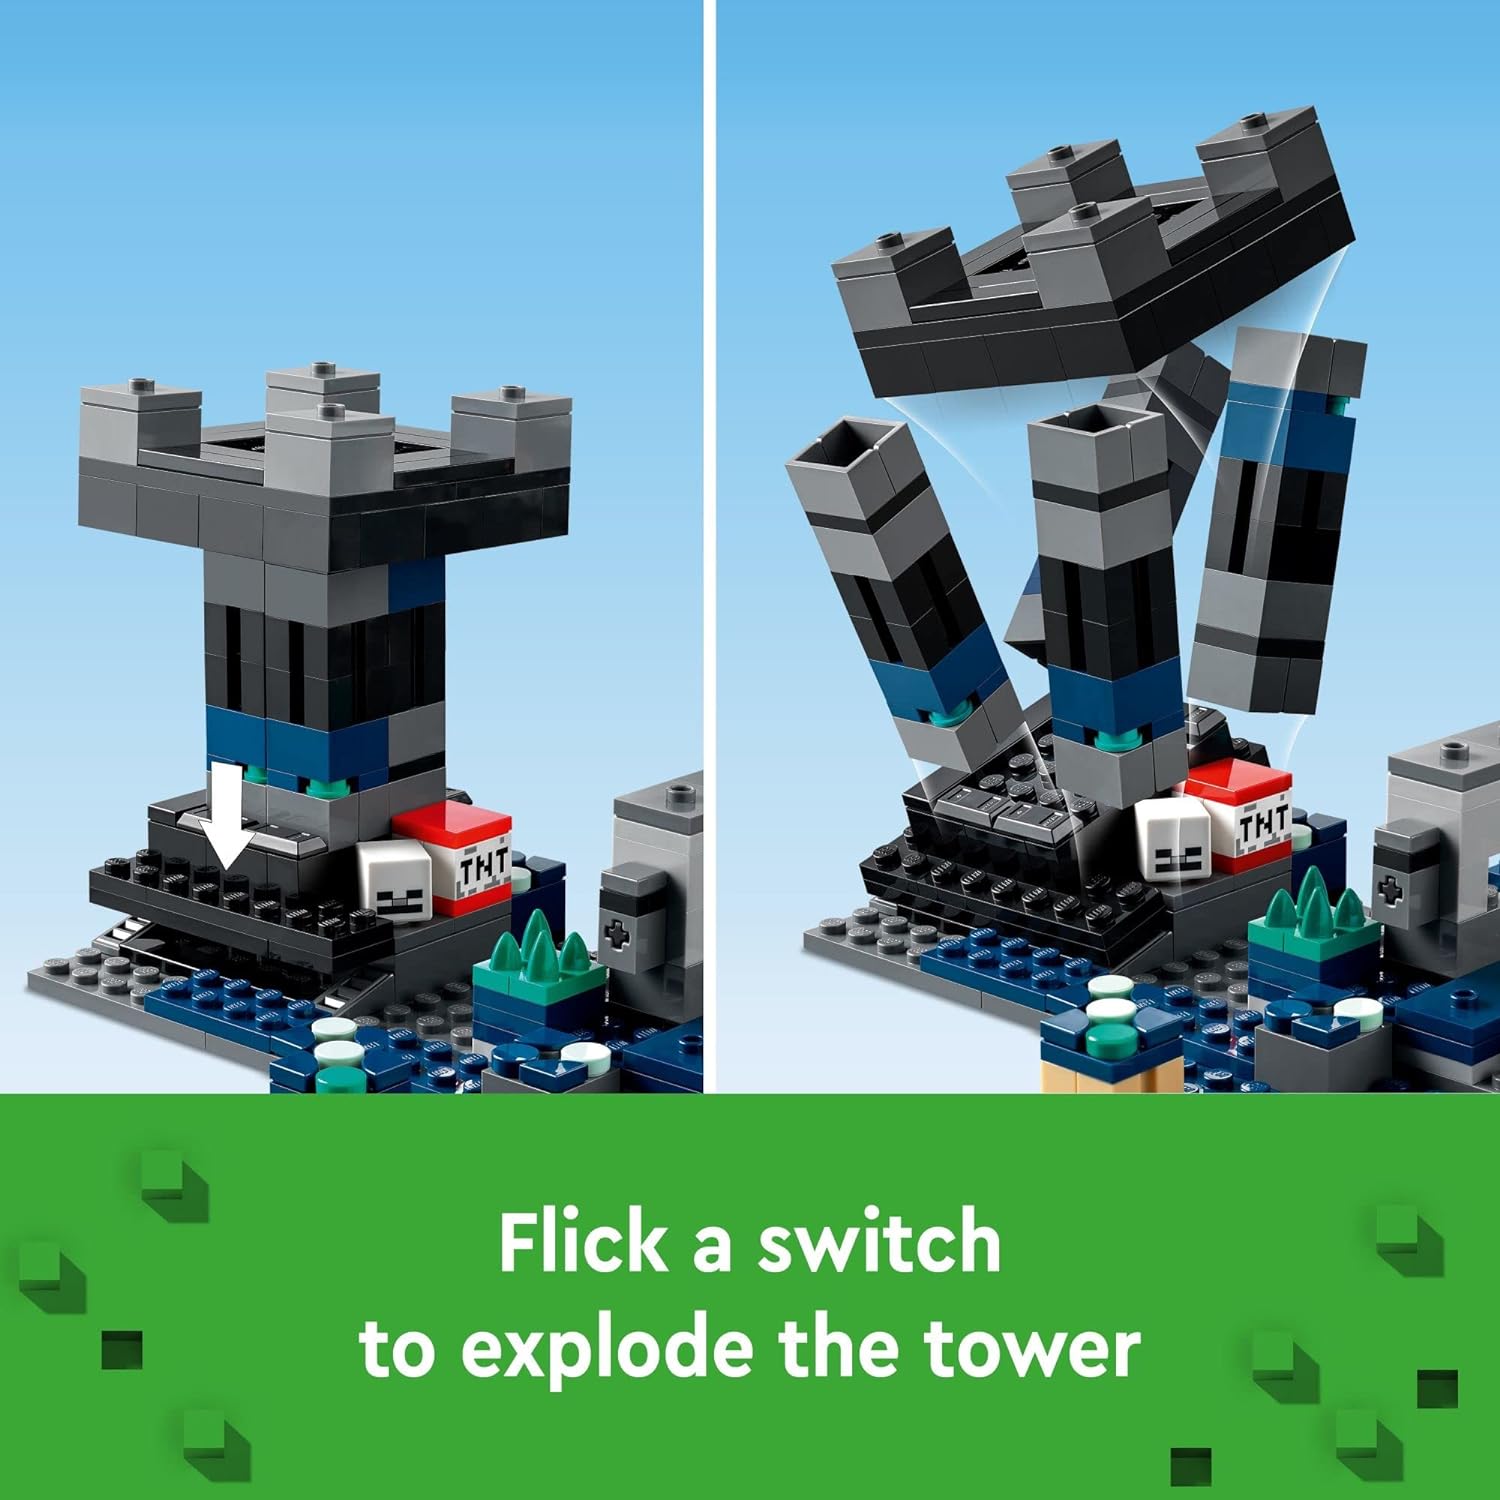 ليجو 21246 مجموعة ماينكرافت ذا ديب دارك باتل، لعبة مغامرة بيوم، مدينة قديمة مع شخصية حارس، برج متفجر وصندوق كنز